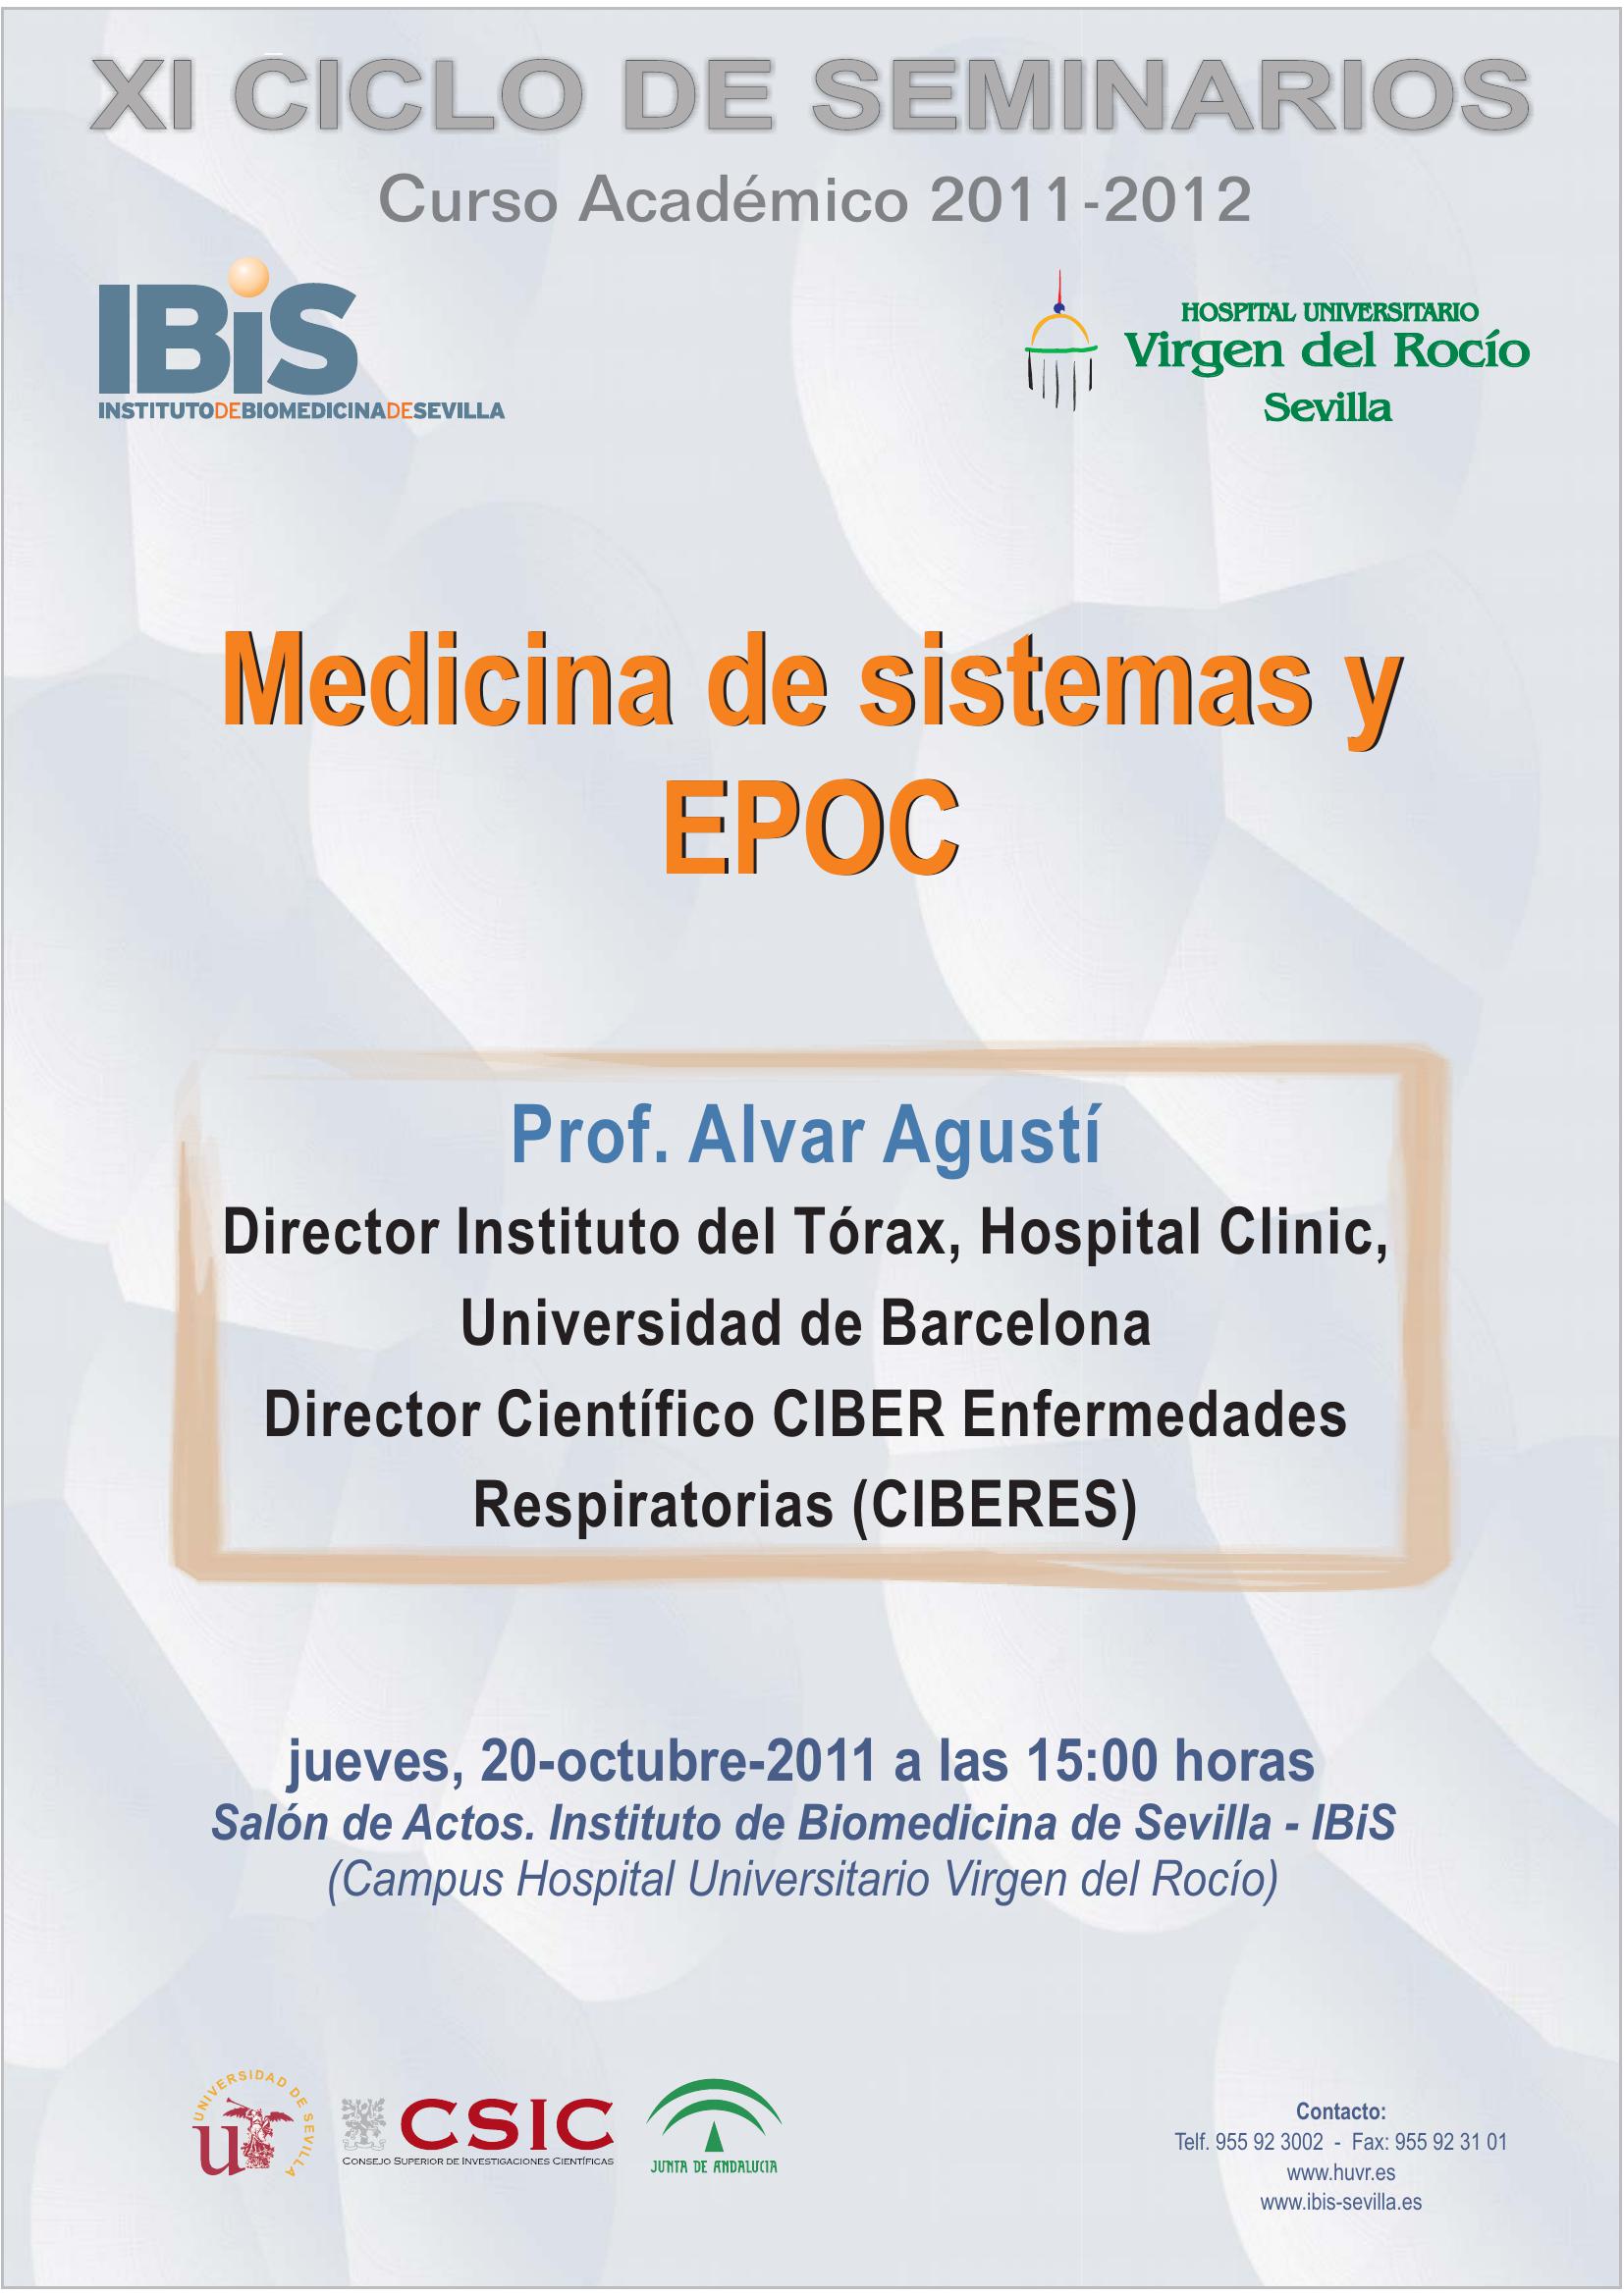 Poster: Medicina de sistemas y EPOC.